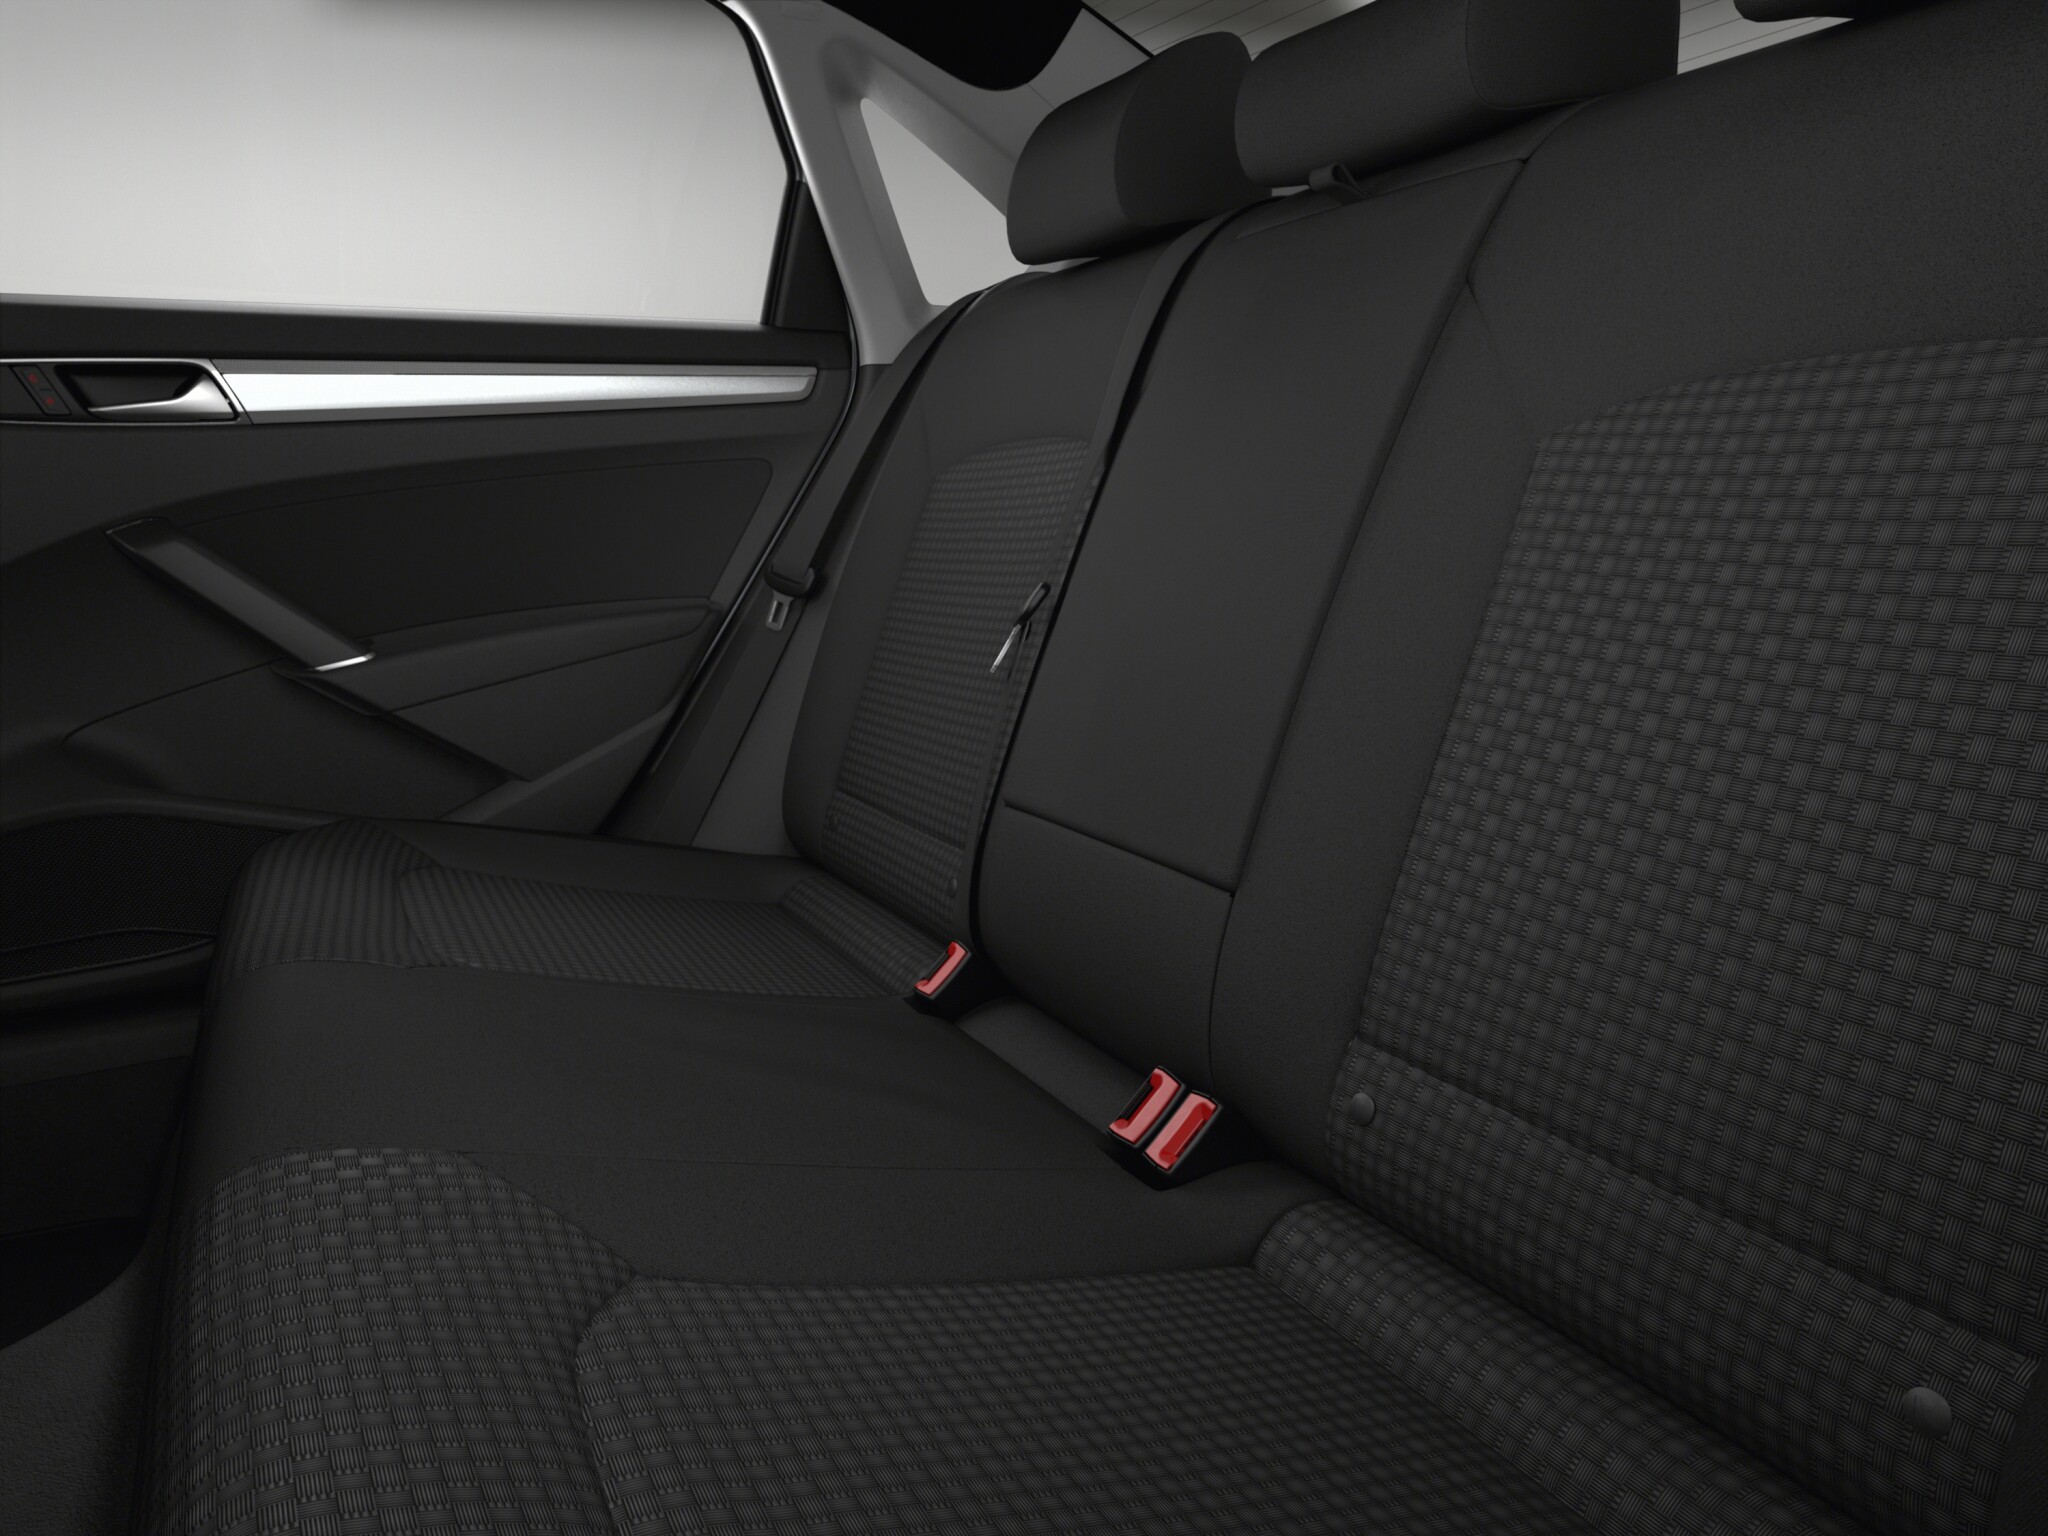 Volkswagen Passat S interior rear seat view